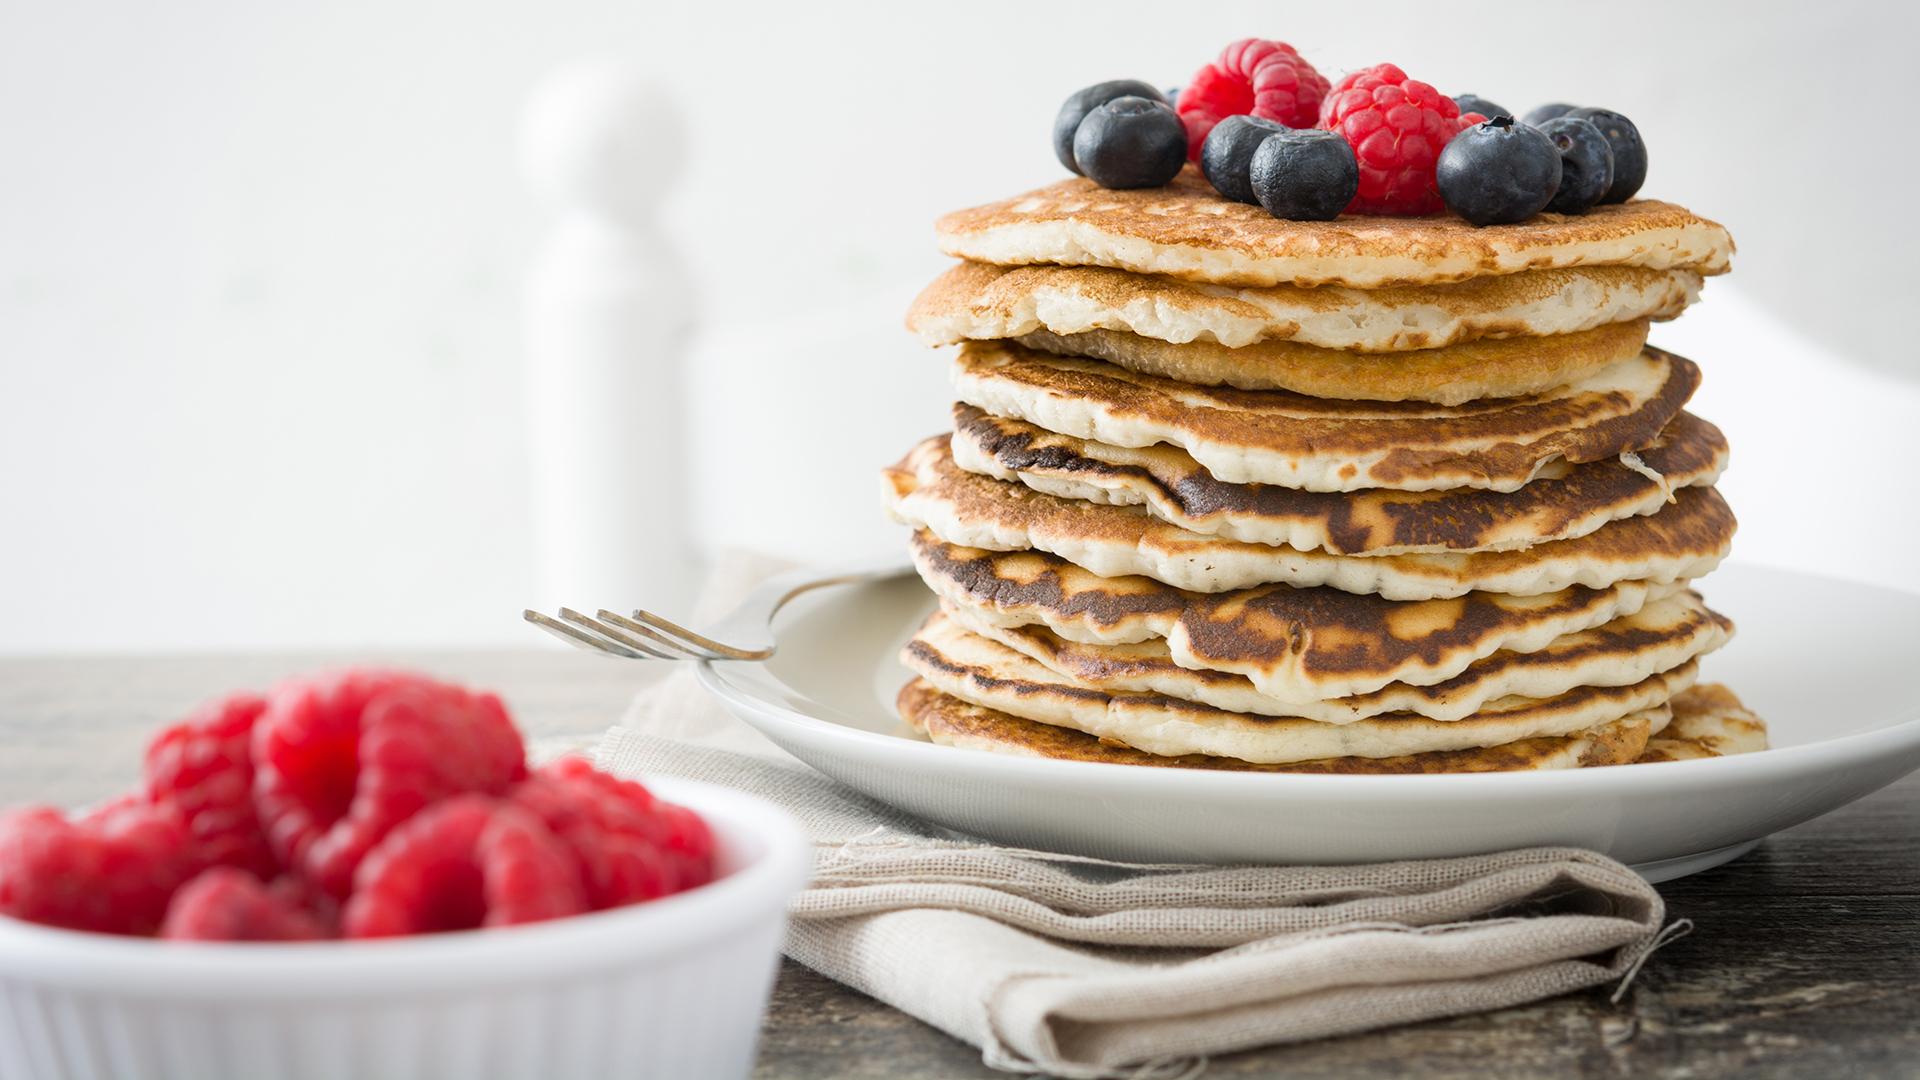 Multigrain Berry Pancakes Made With Blueberries, Blackberries & Raspberries